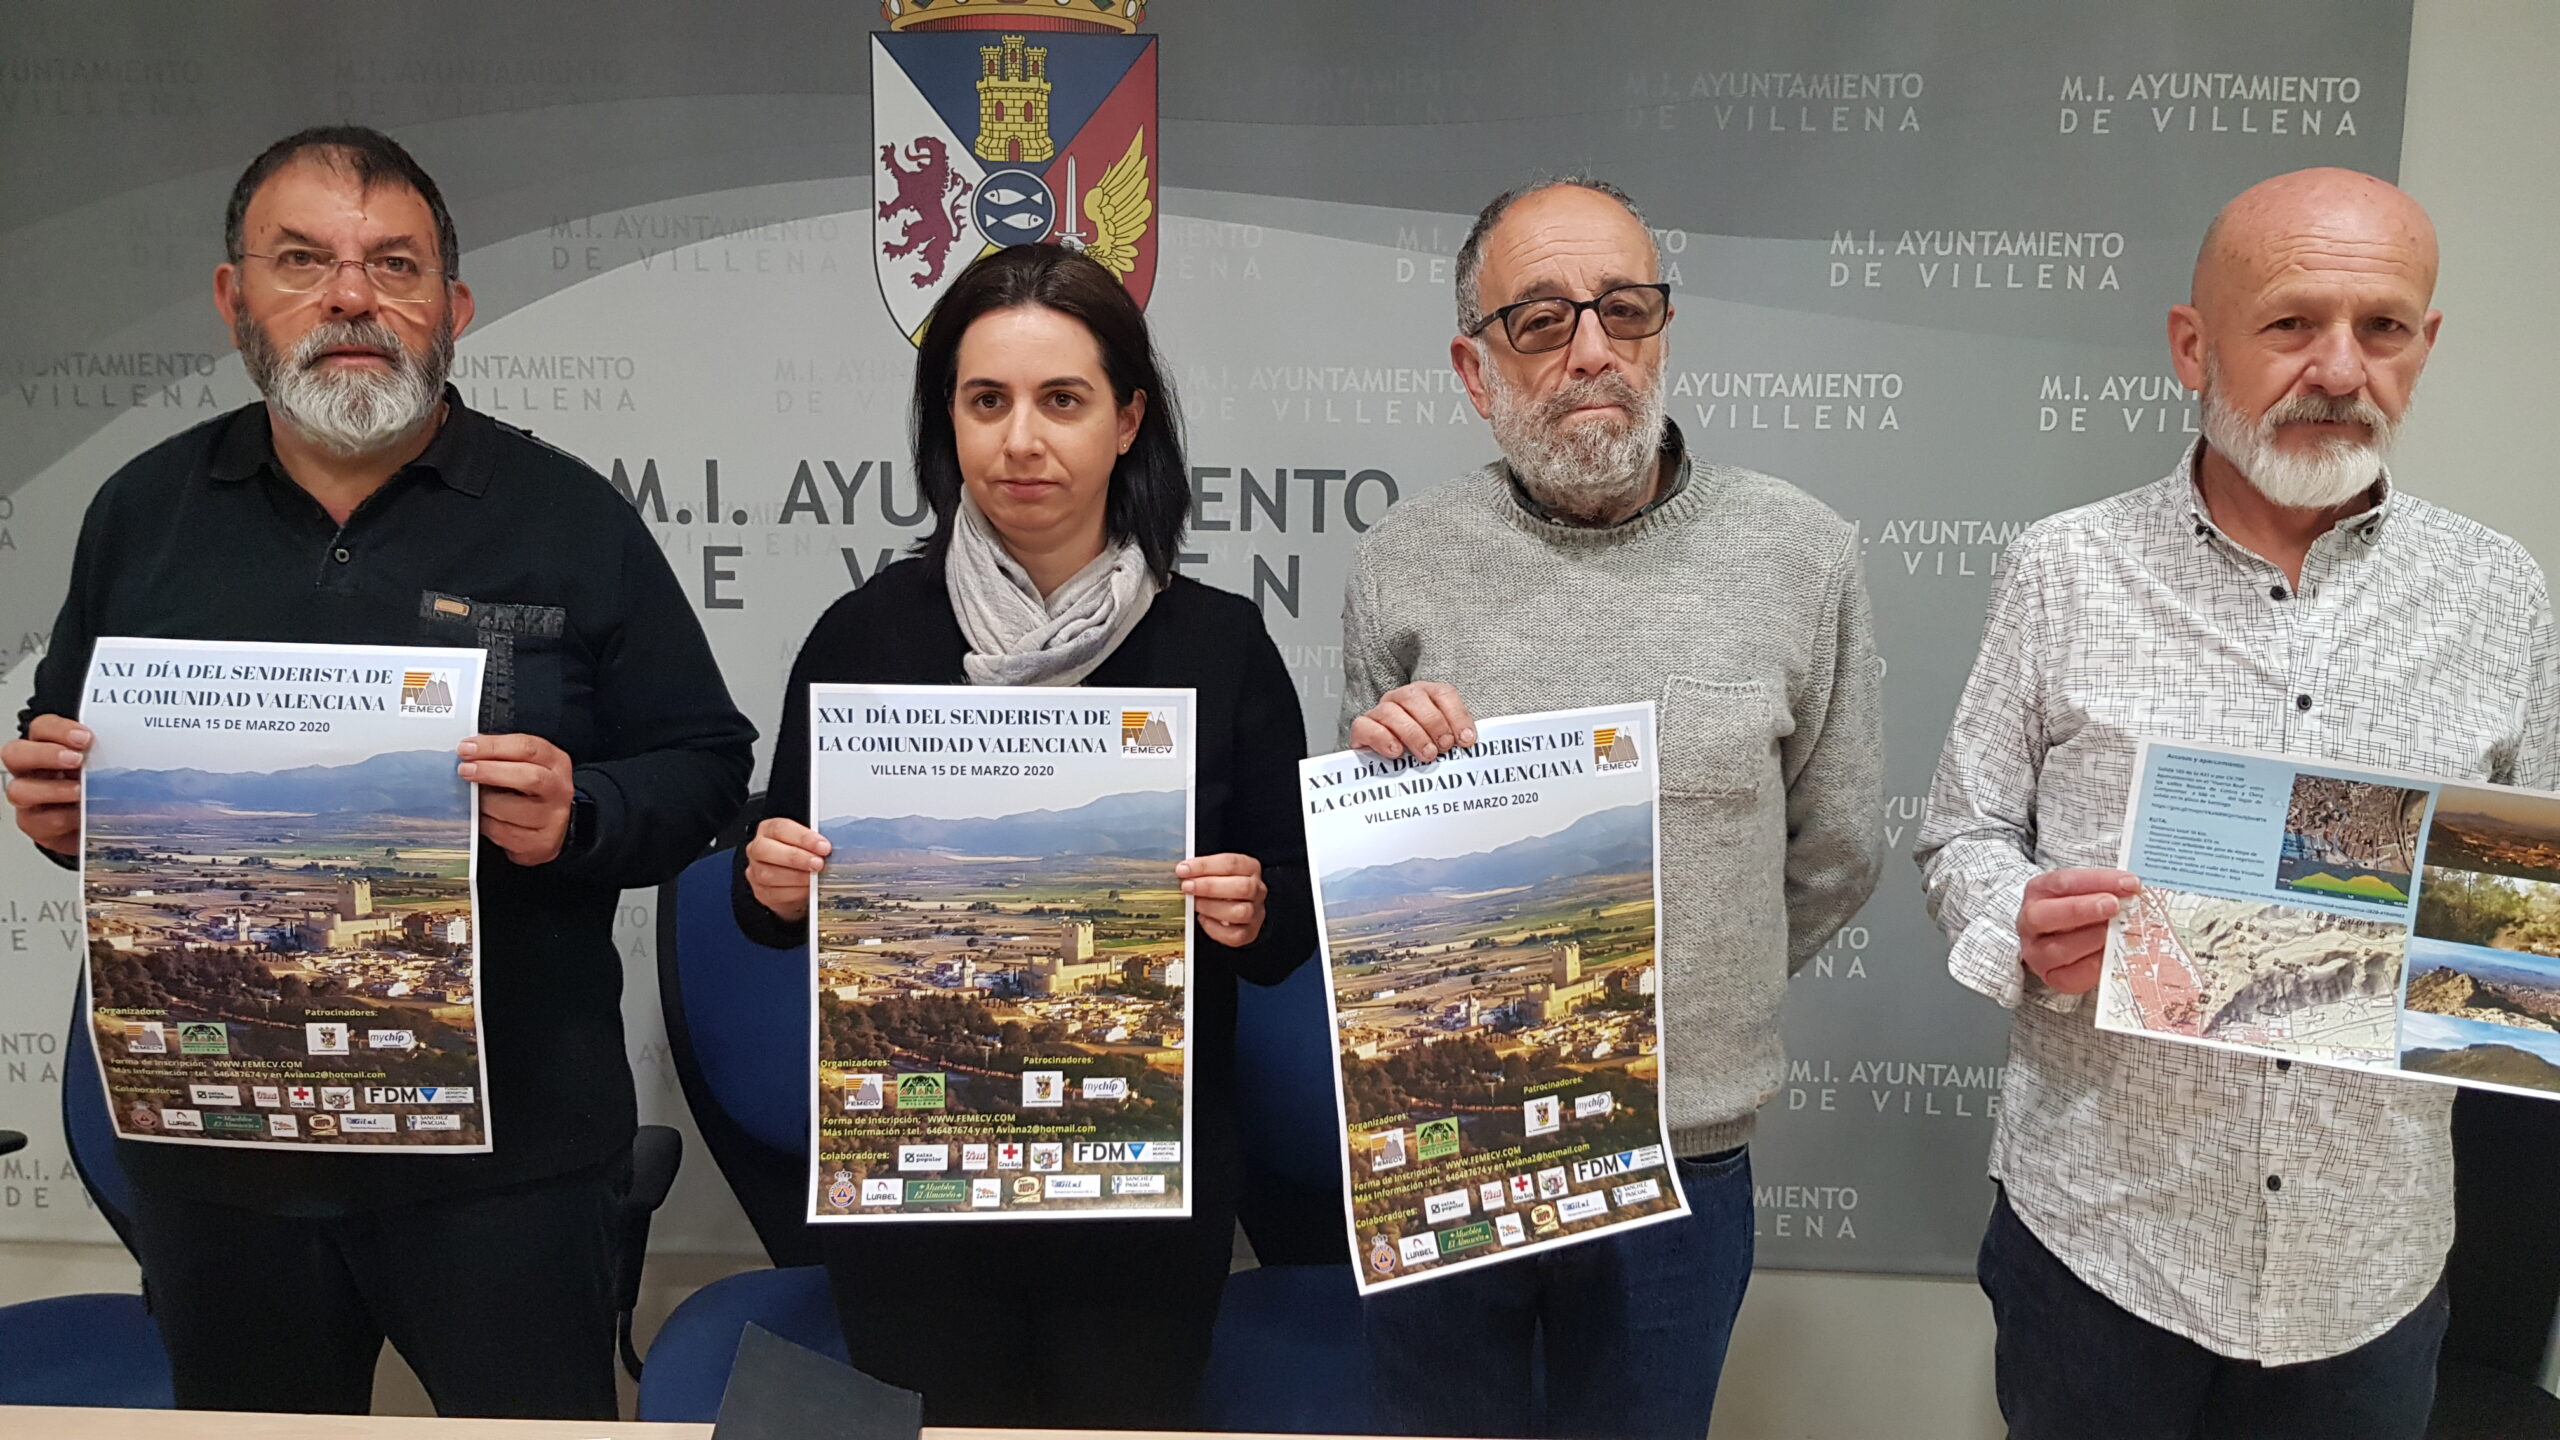 AVIANA organiza por primera vez el Día del Senderista de la Comunidad Valenciana en Villena